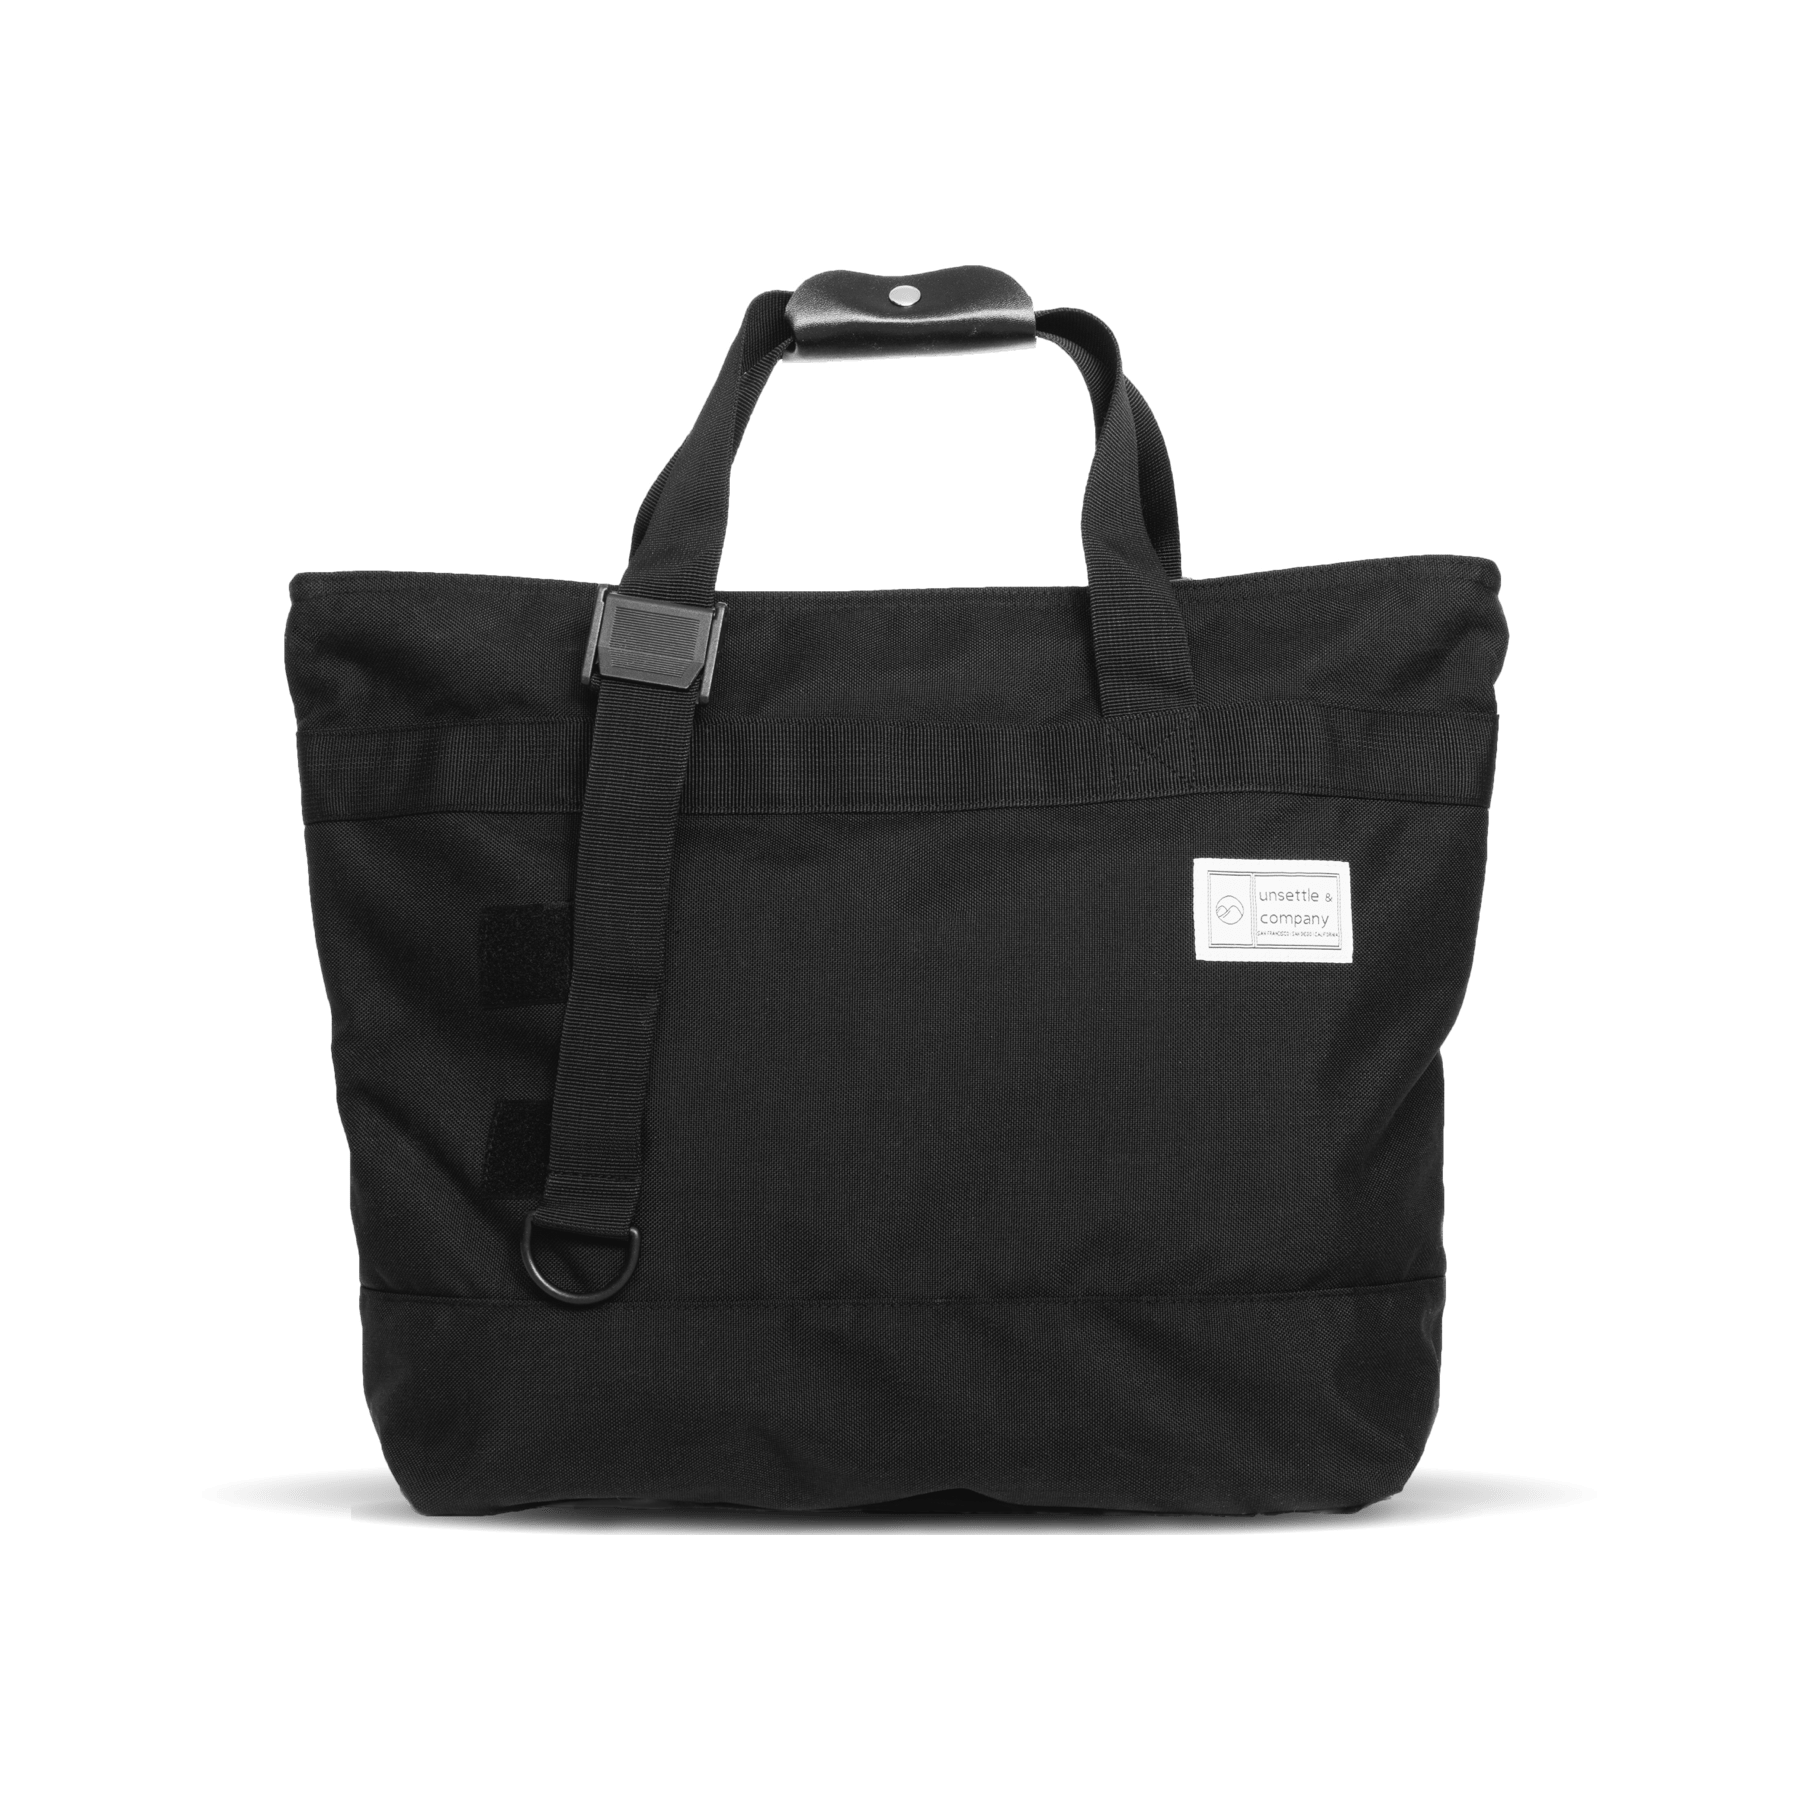 Small Square Shoulder Bag by Courrèges- La Garçonne